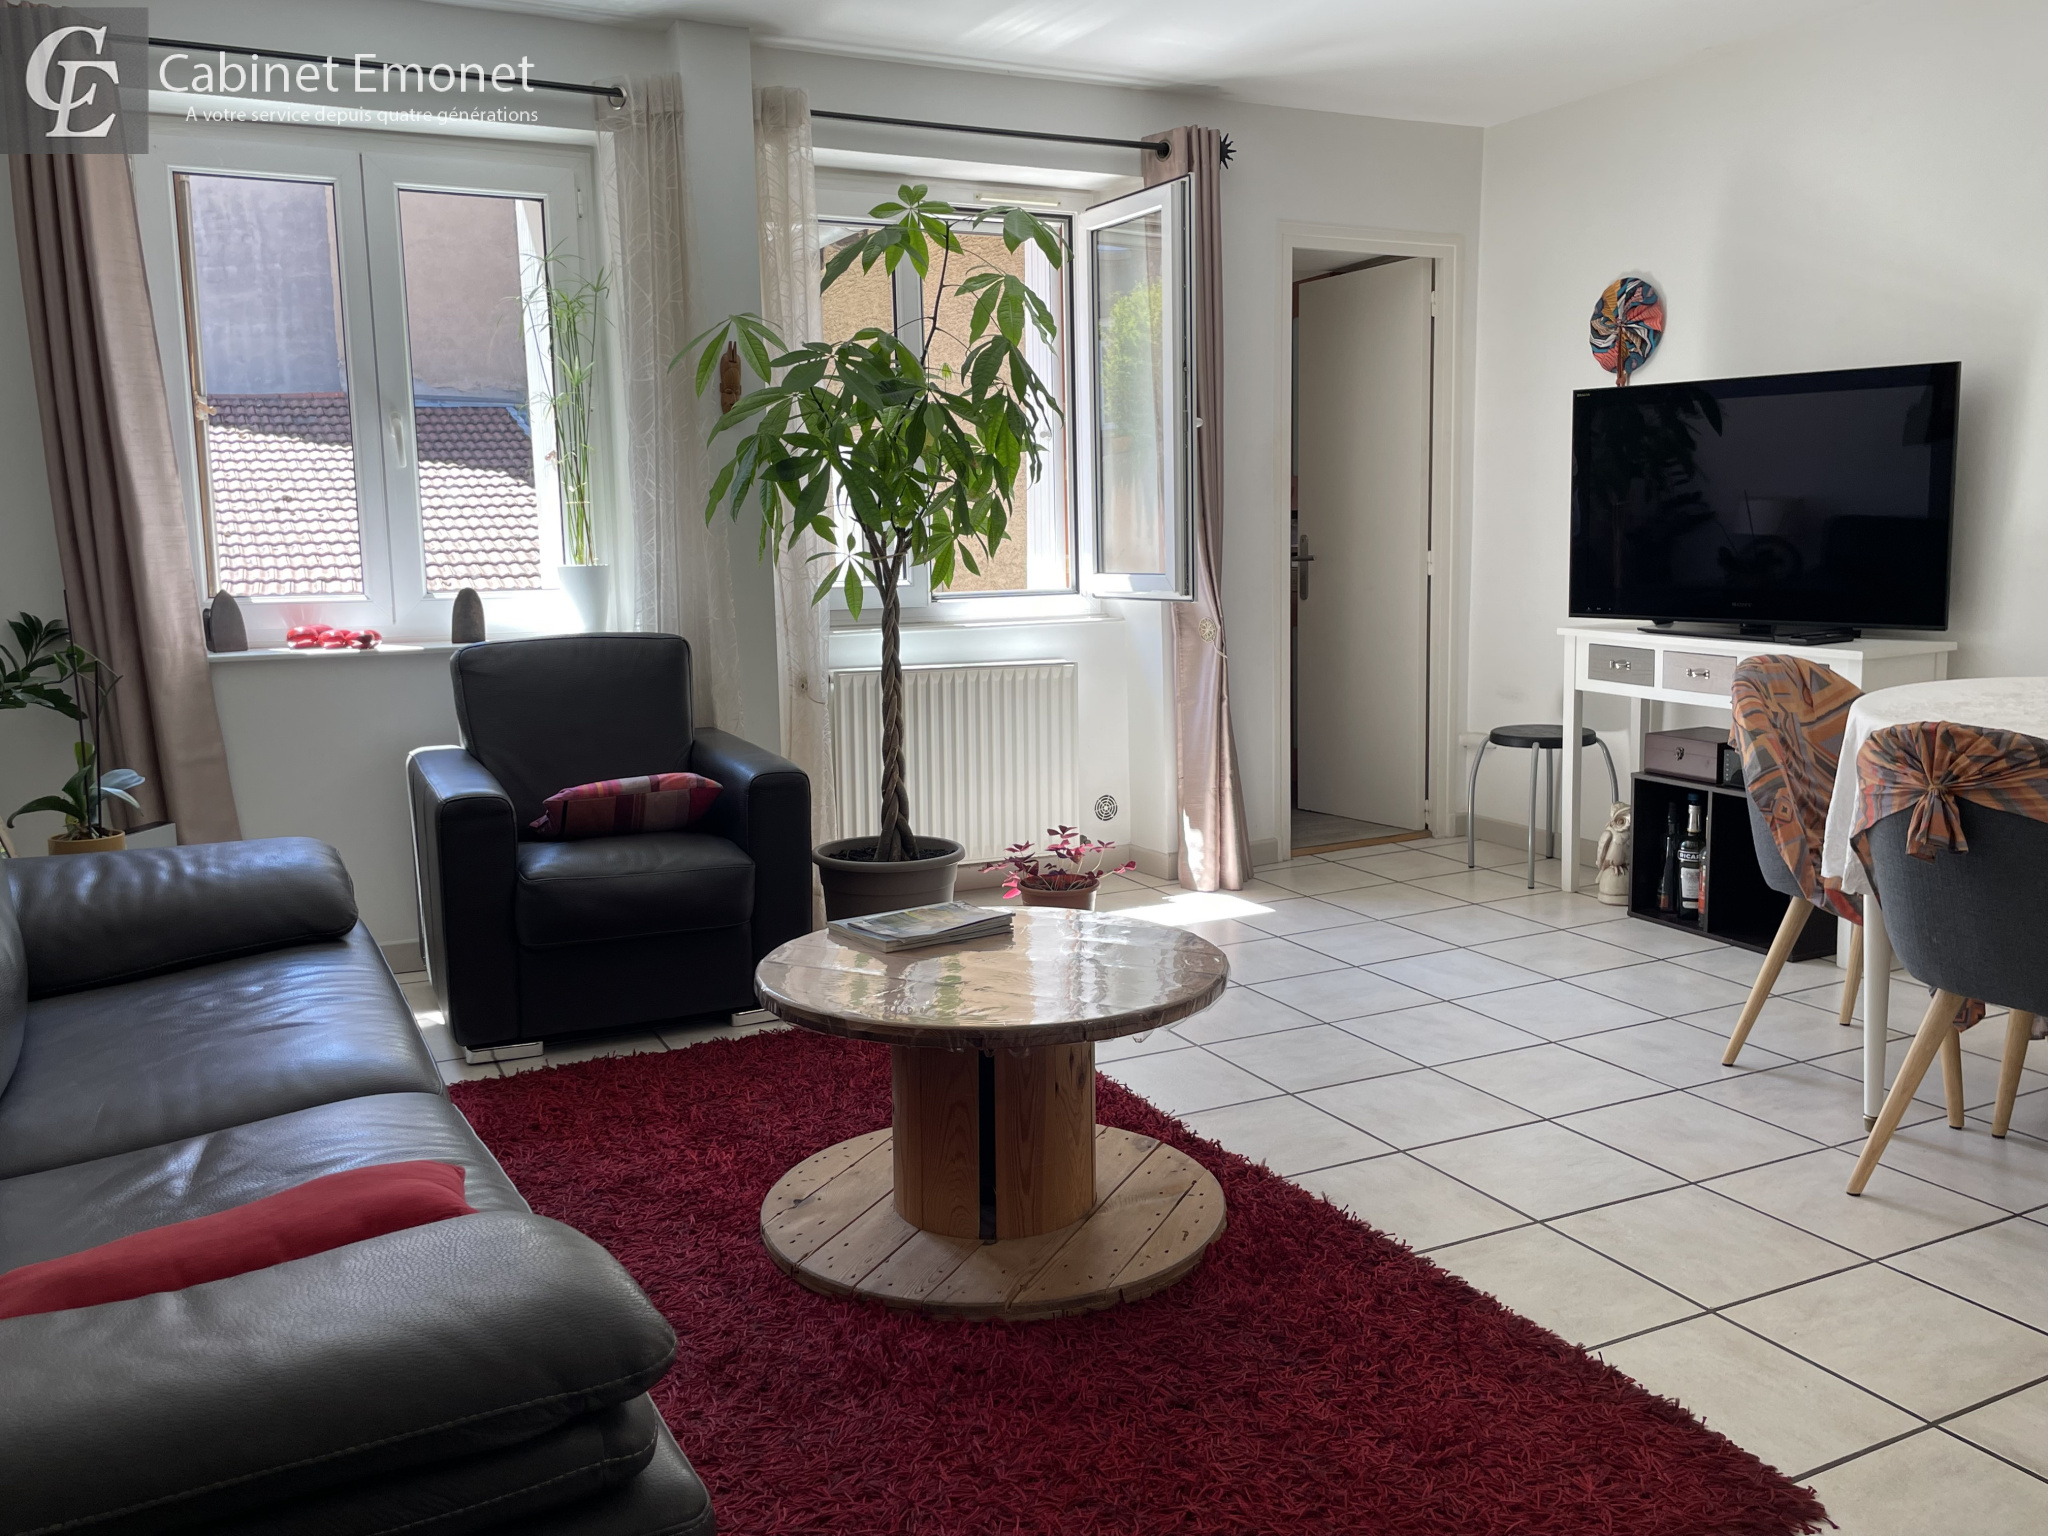 Vente Appartement 76m² 4 Pièces à Saint-Étienne (42000) - Cabinet Emonet Christian